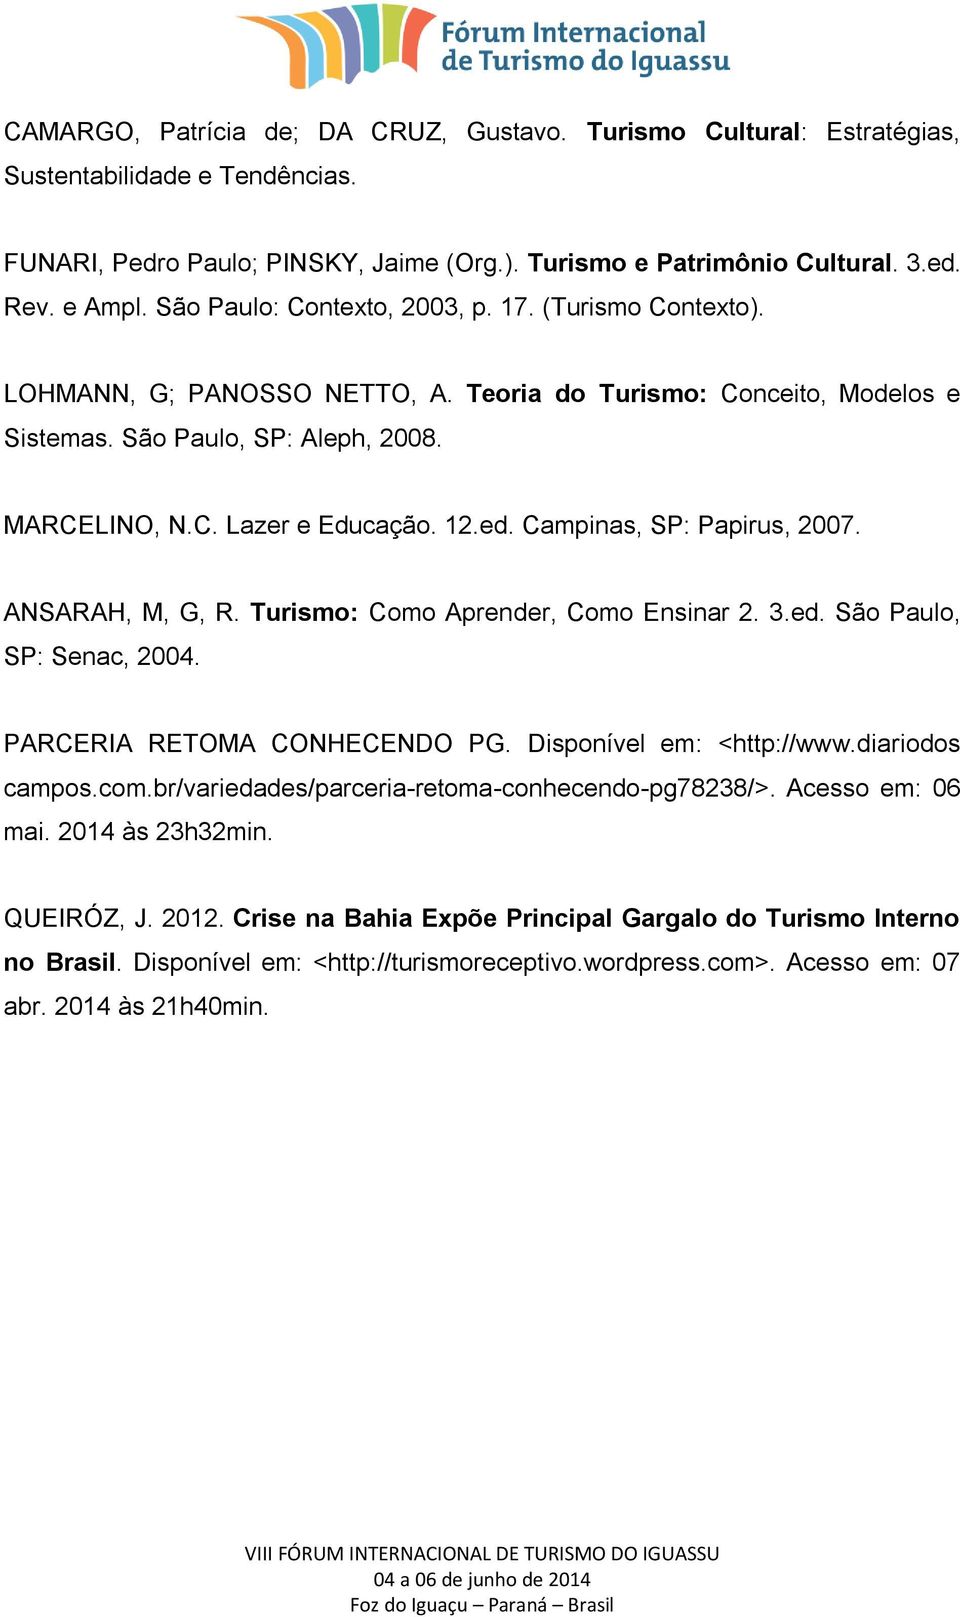 ed. Campinas, SP: Papirus, 2007. ANSARAH, M, G, R. Turismo: Como Aprender, Como Ensinar 2. 3.ed. São Paulo, SP: Senac, 2004. PARCERIA RETOMA CONHECENDO PG. Disponível em: <http://www.diariodos campos.